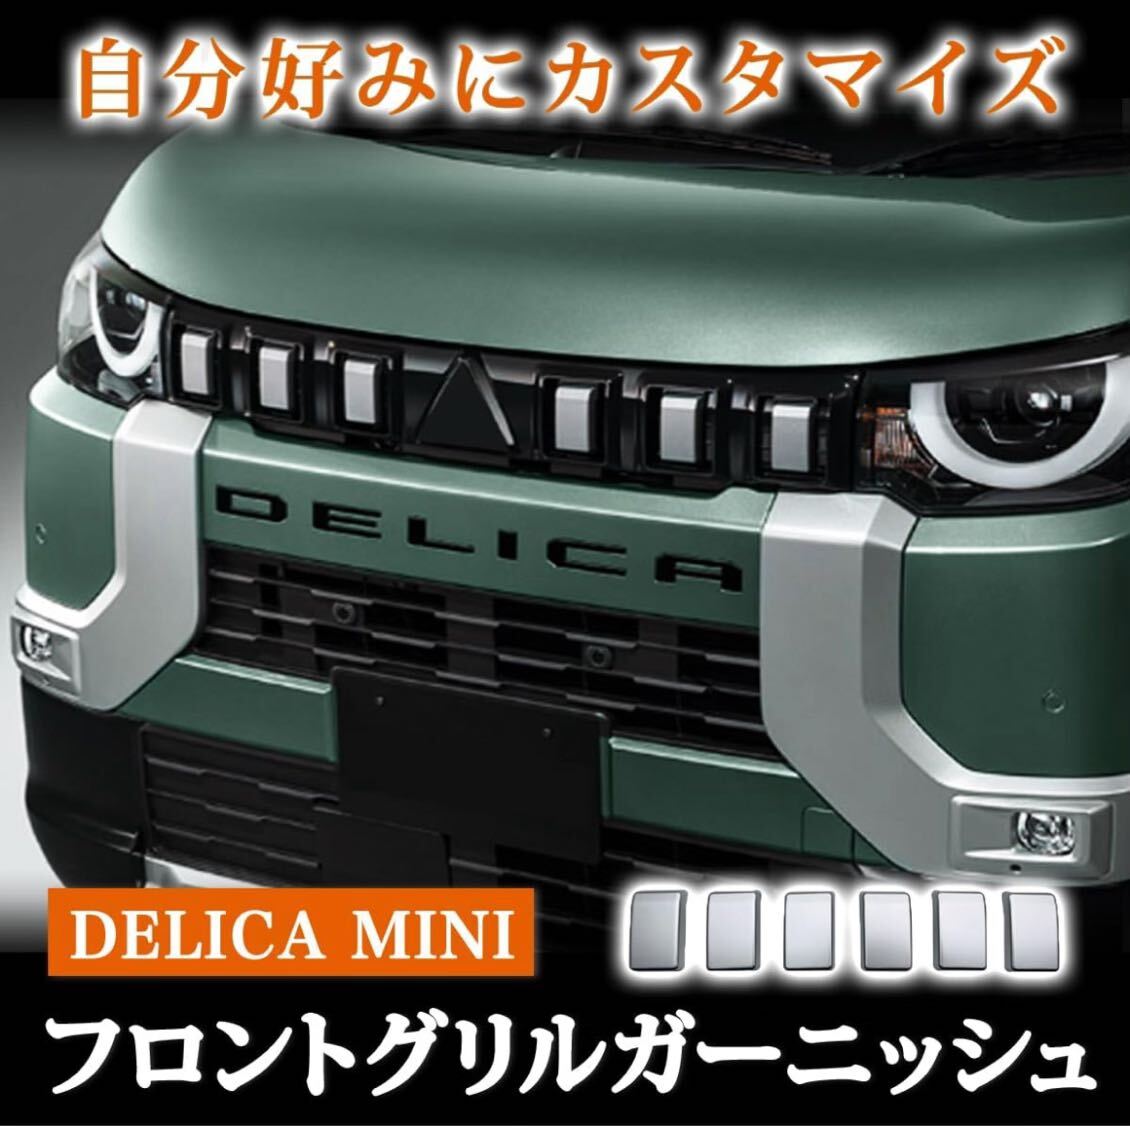  Delica Mini custom детали Delica Mini DELICAMINI Mitsubishi Logo эмблема передний custom детали украшать машина детали коврик серебряный 